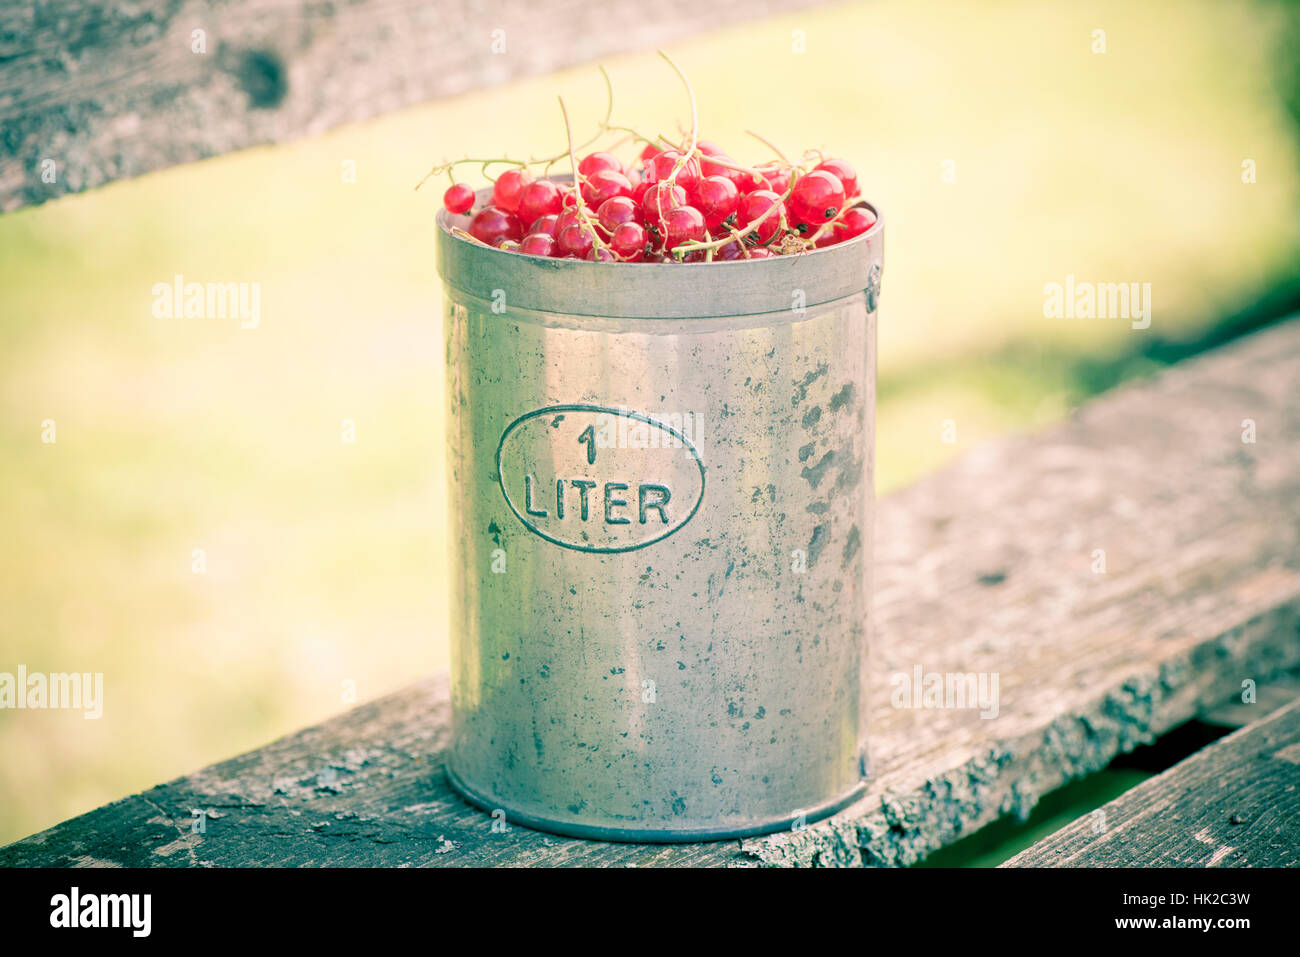 Red currant berries in bucket. Summer garden scene. Stock Photo